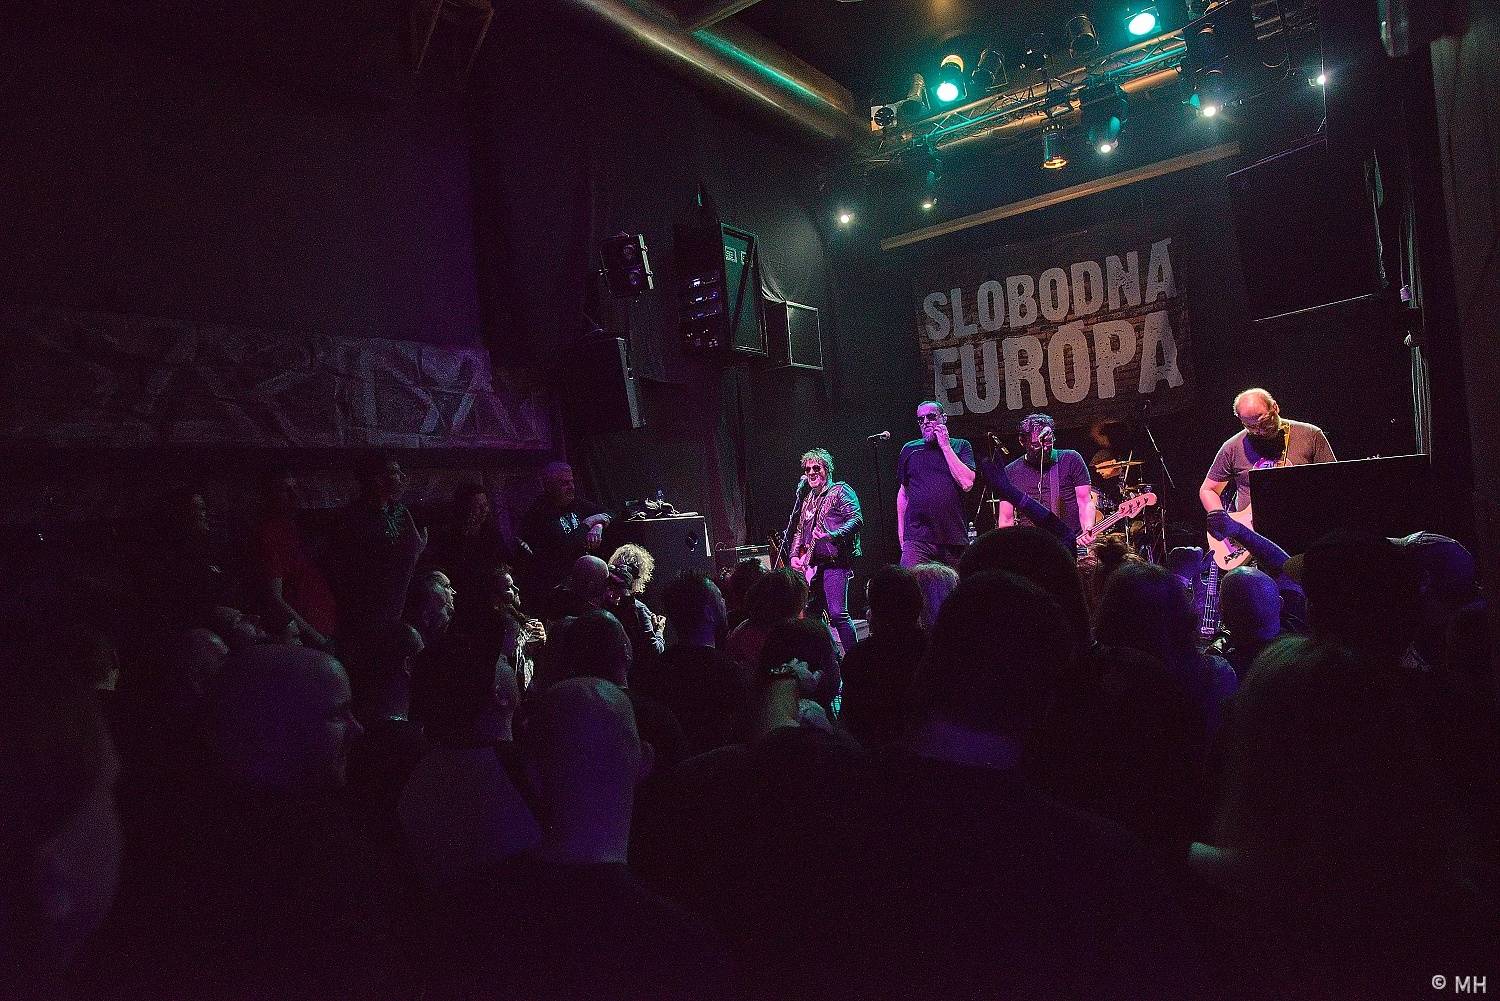 Slobodná Európa slaví dvacáté výročí alba Trojka, přehrála ho fanouškům v Plzni